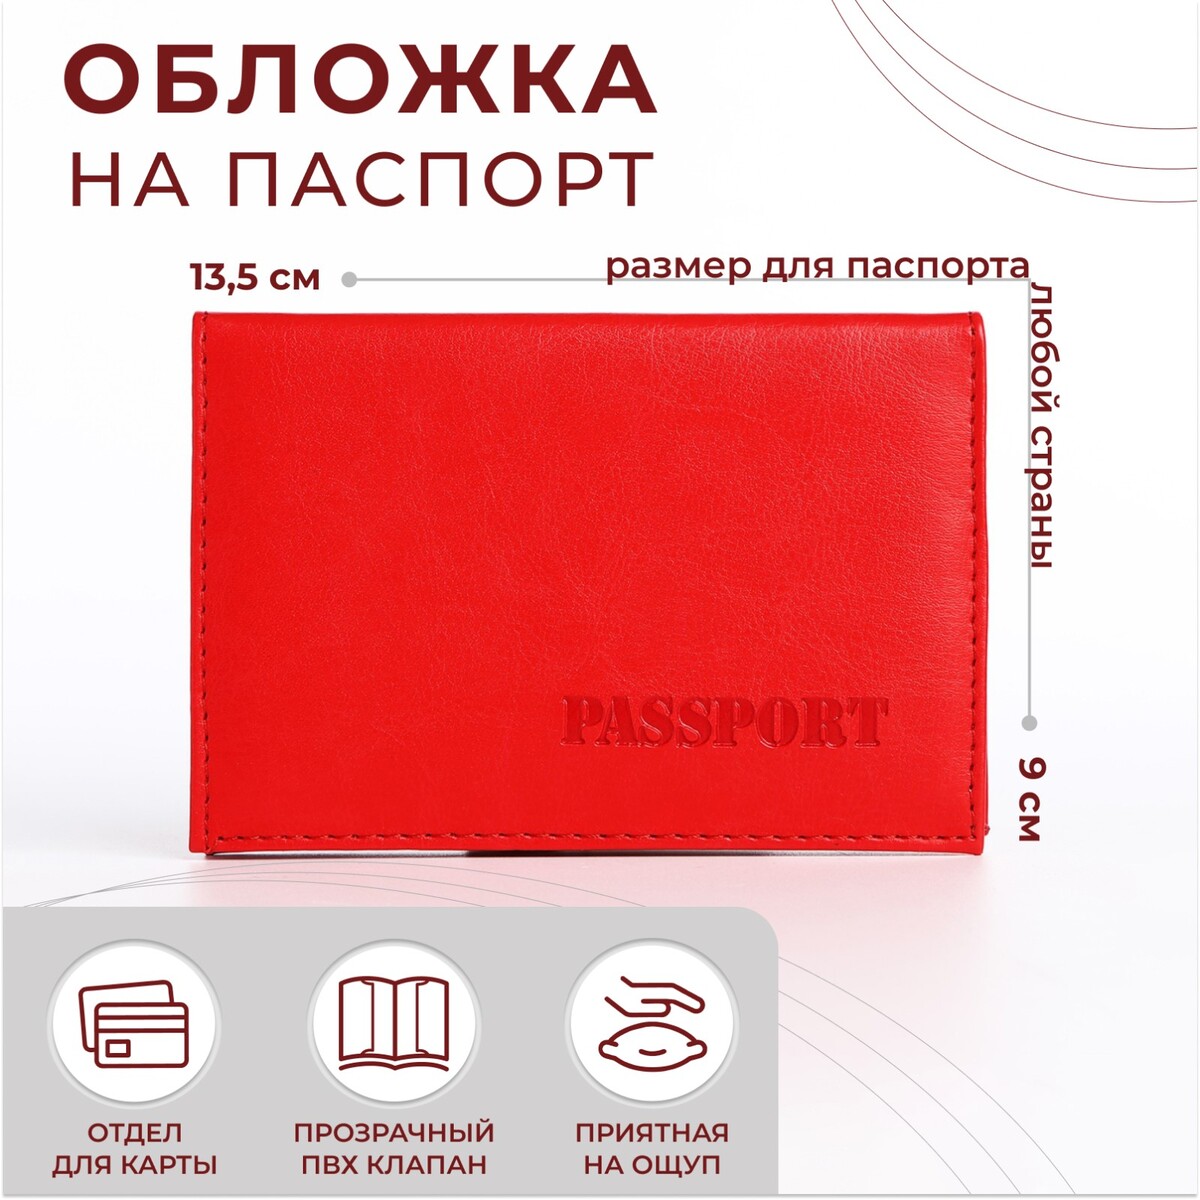 Обложка для паспорта, цвет алый обложка для паспорта алый